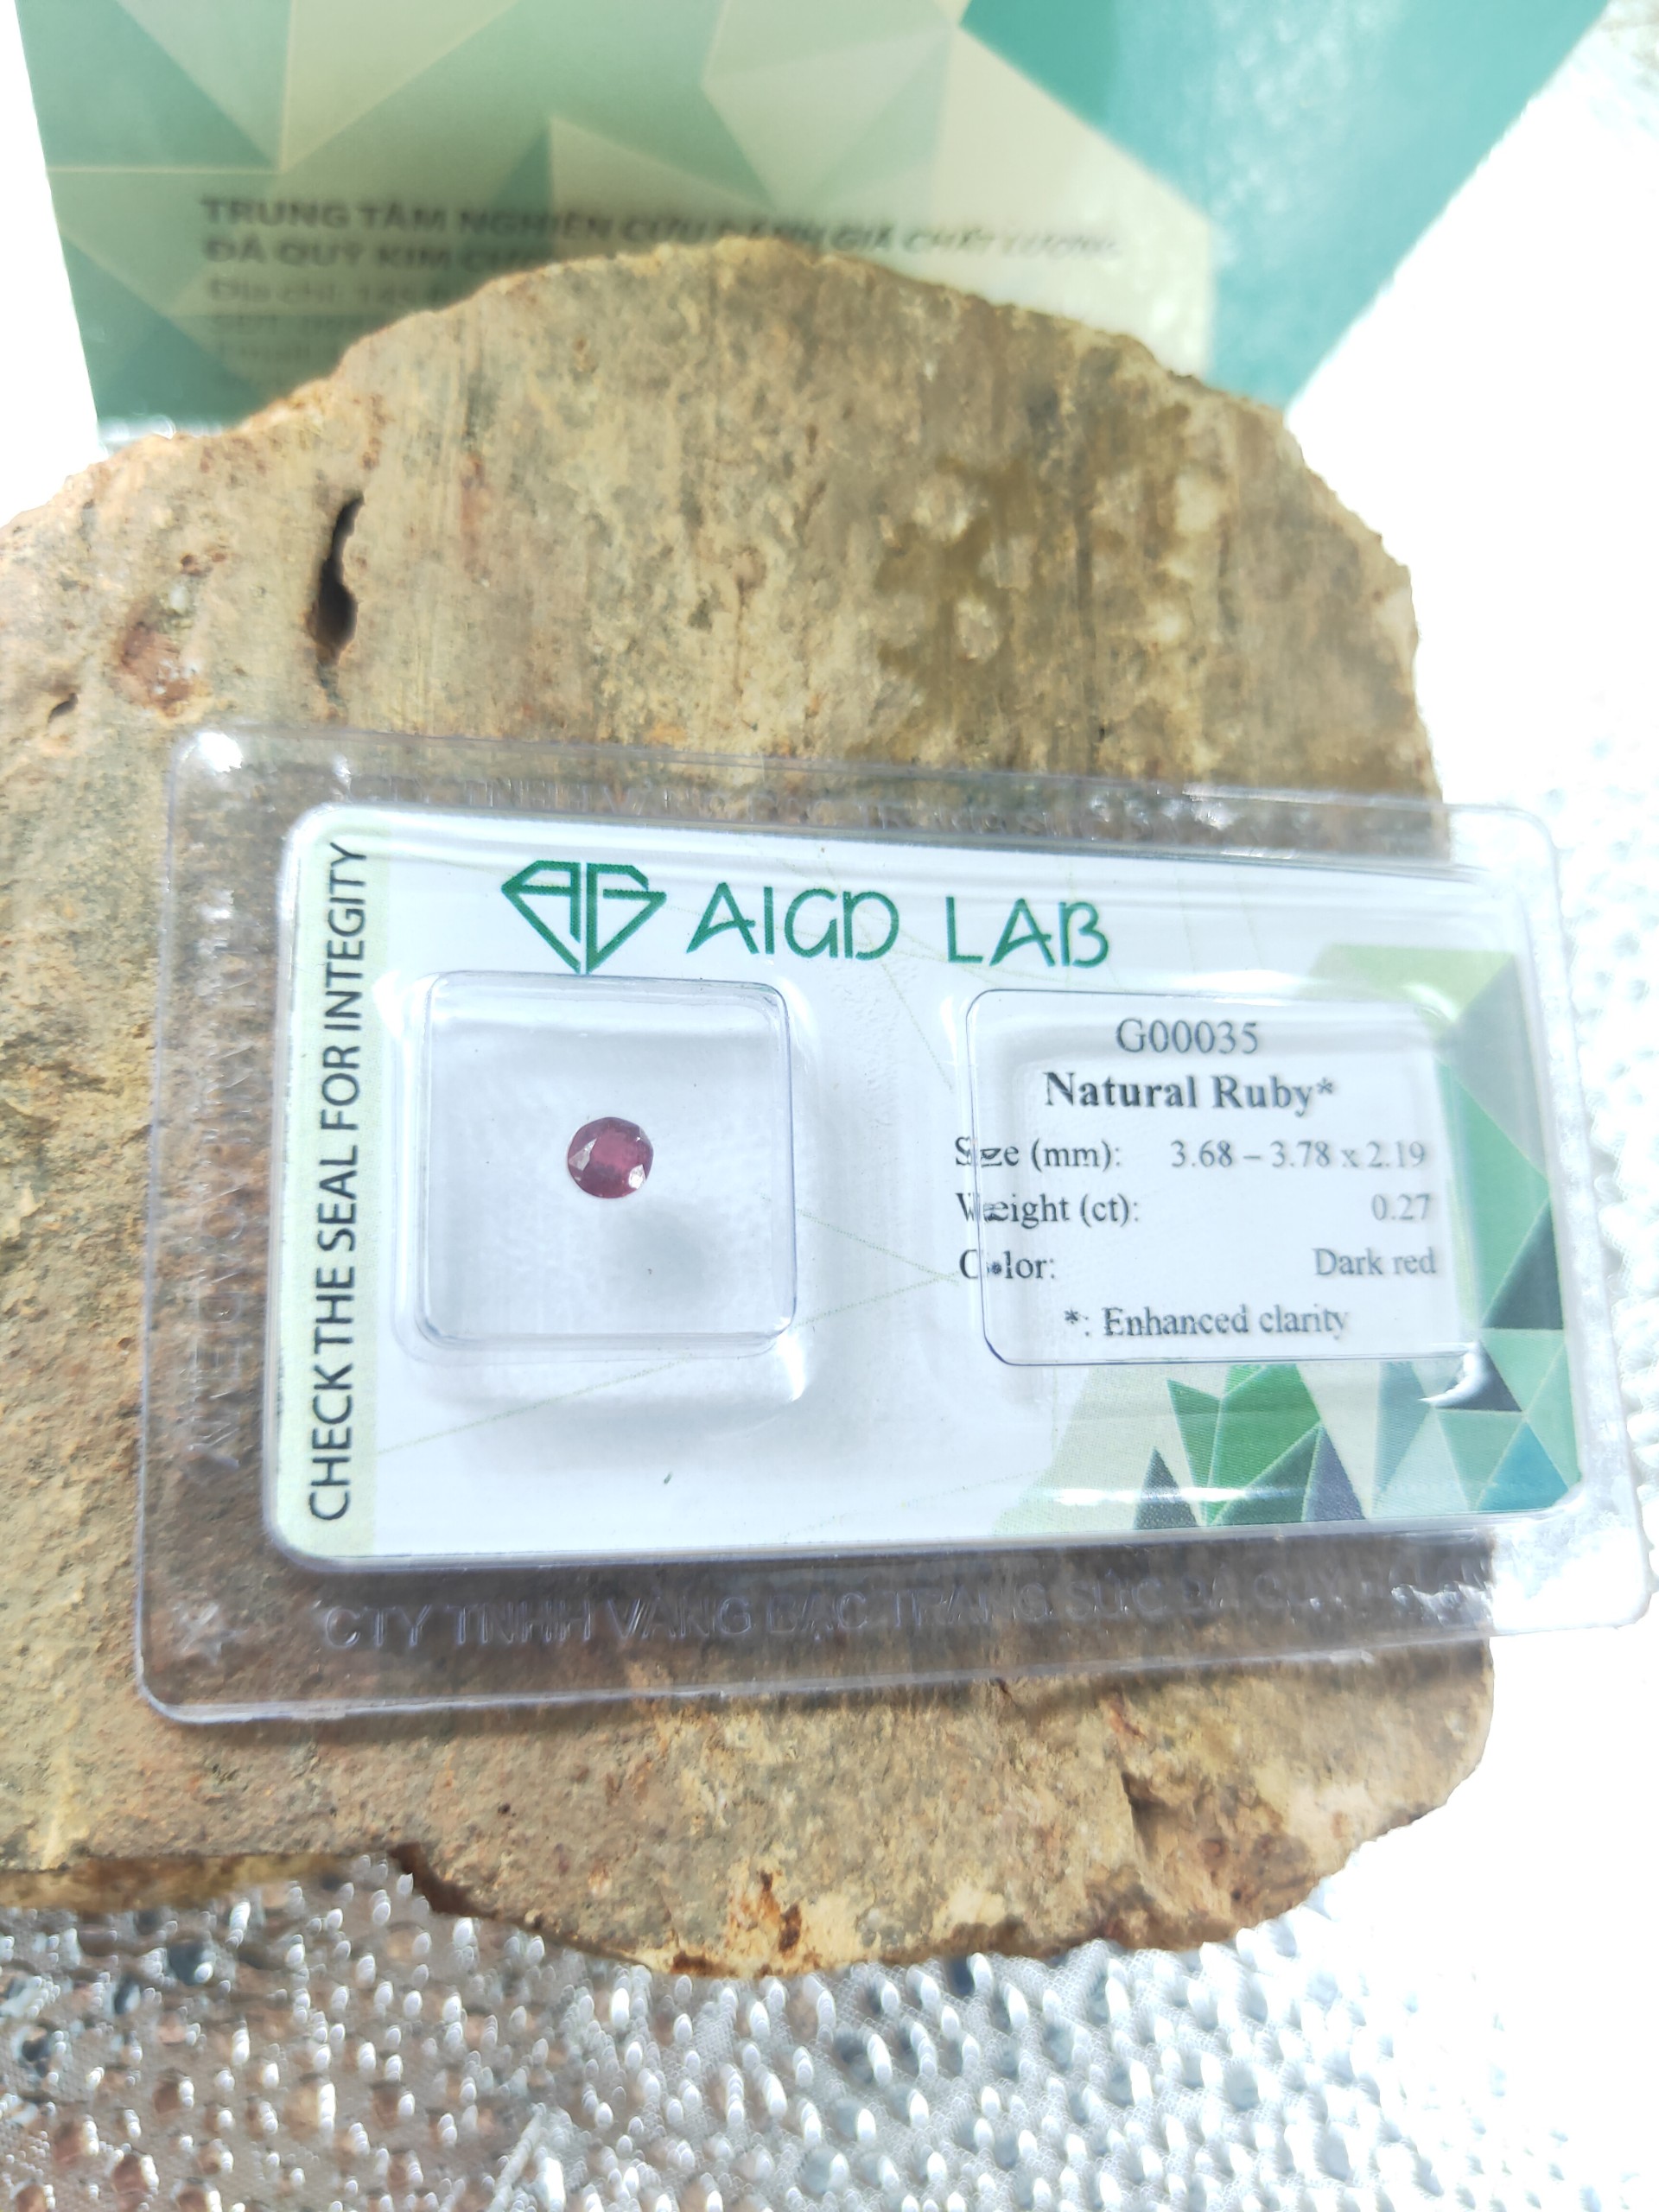 Viên đá Ruby tấm thiên nhiên G00035